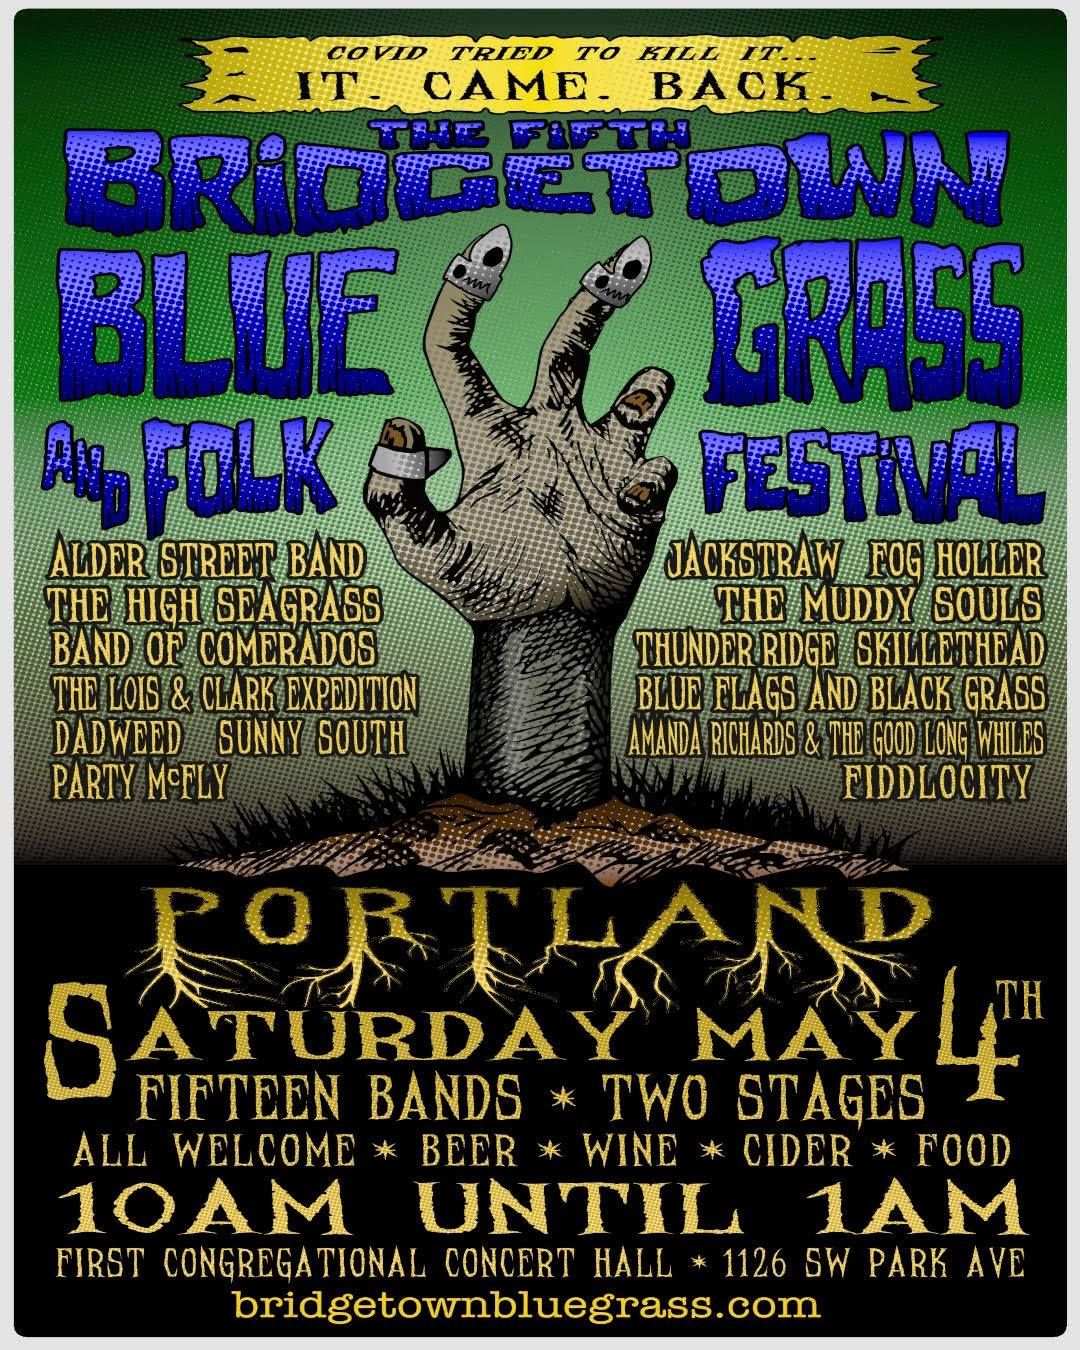 Bridgetown Bluegrass & Folk Festival